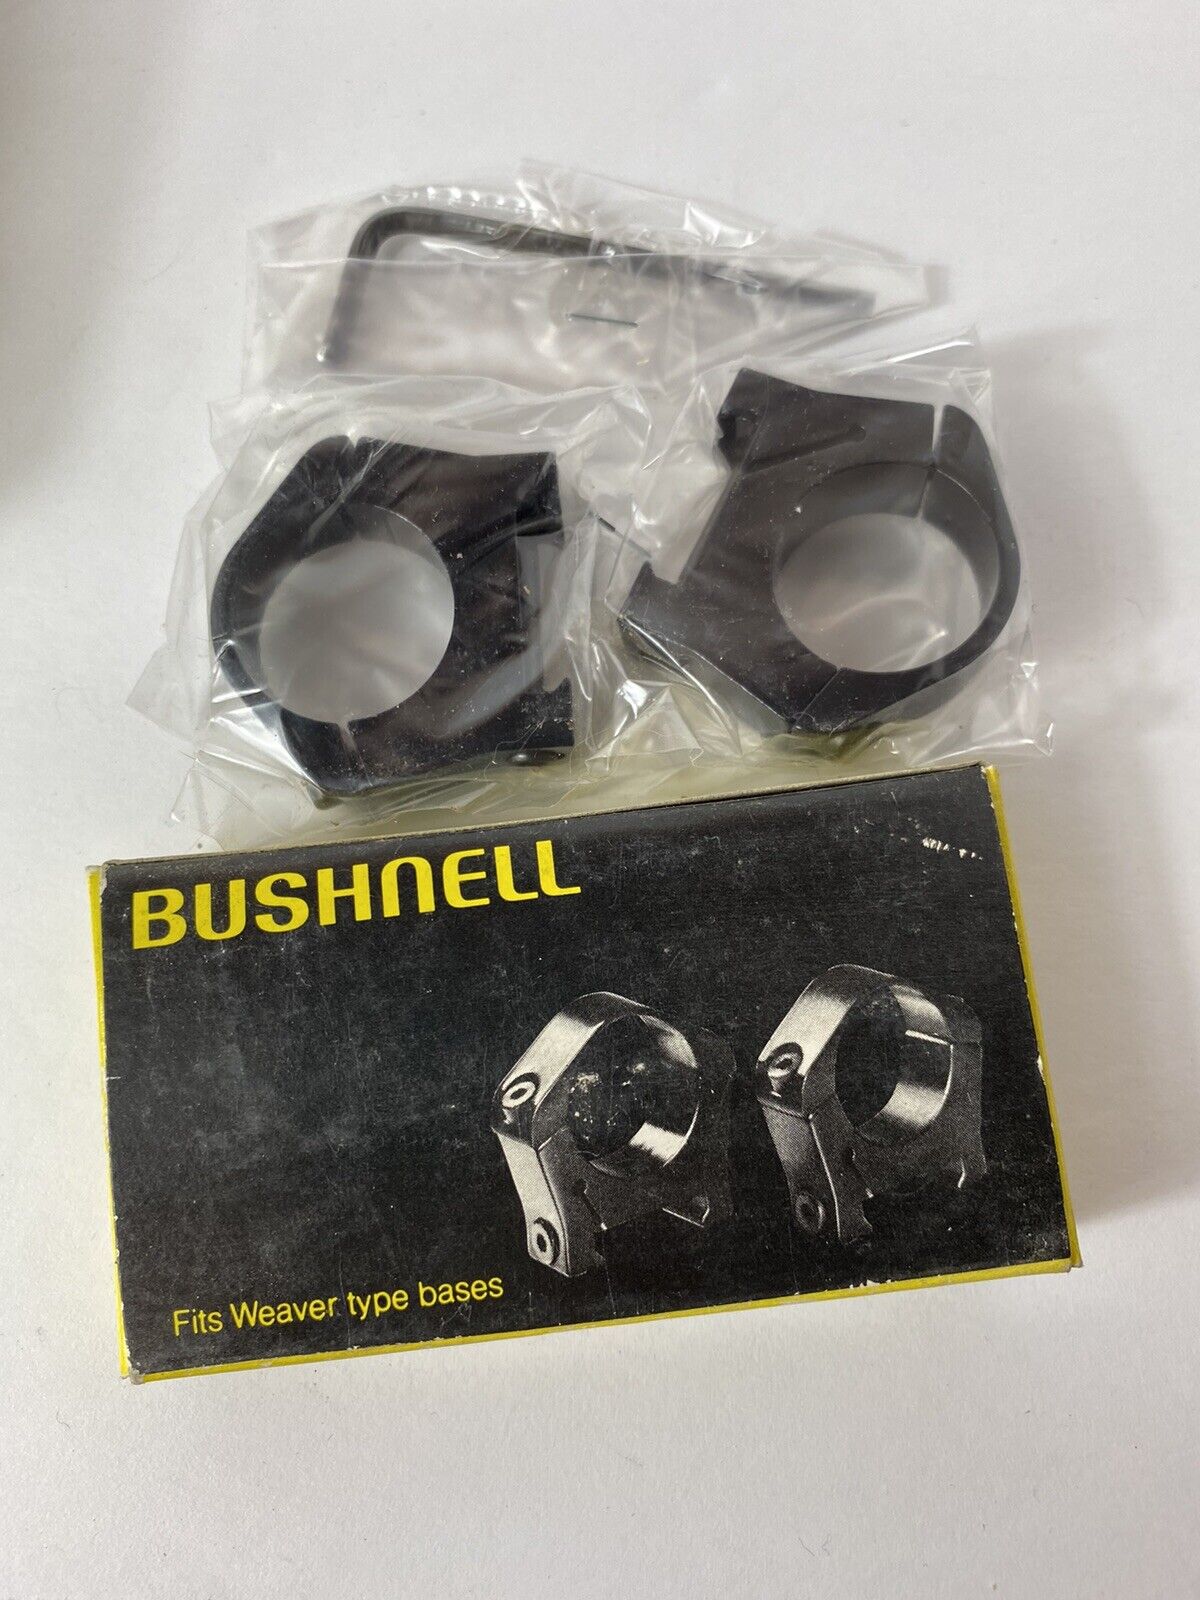 Bushnell 76-3102 1" Riflescope Mount Rings - fits Weaver Bases